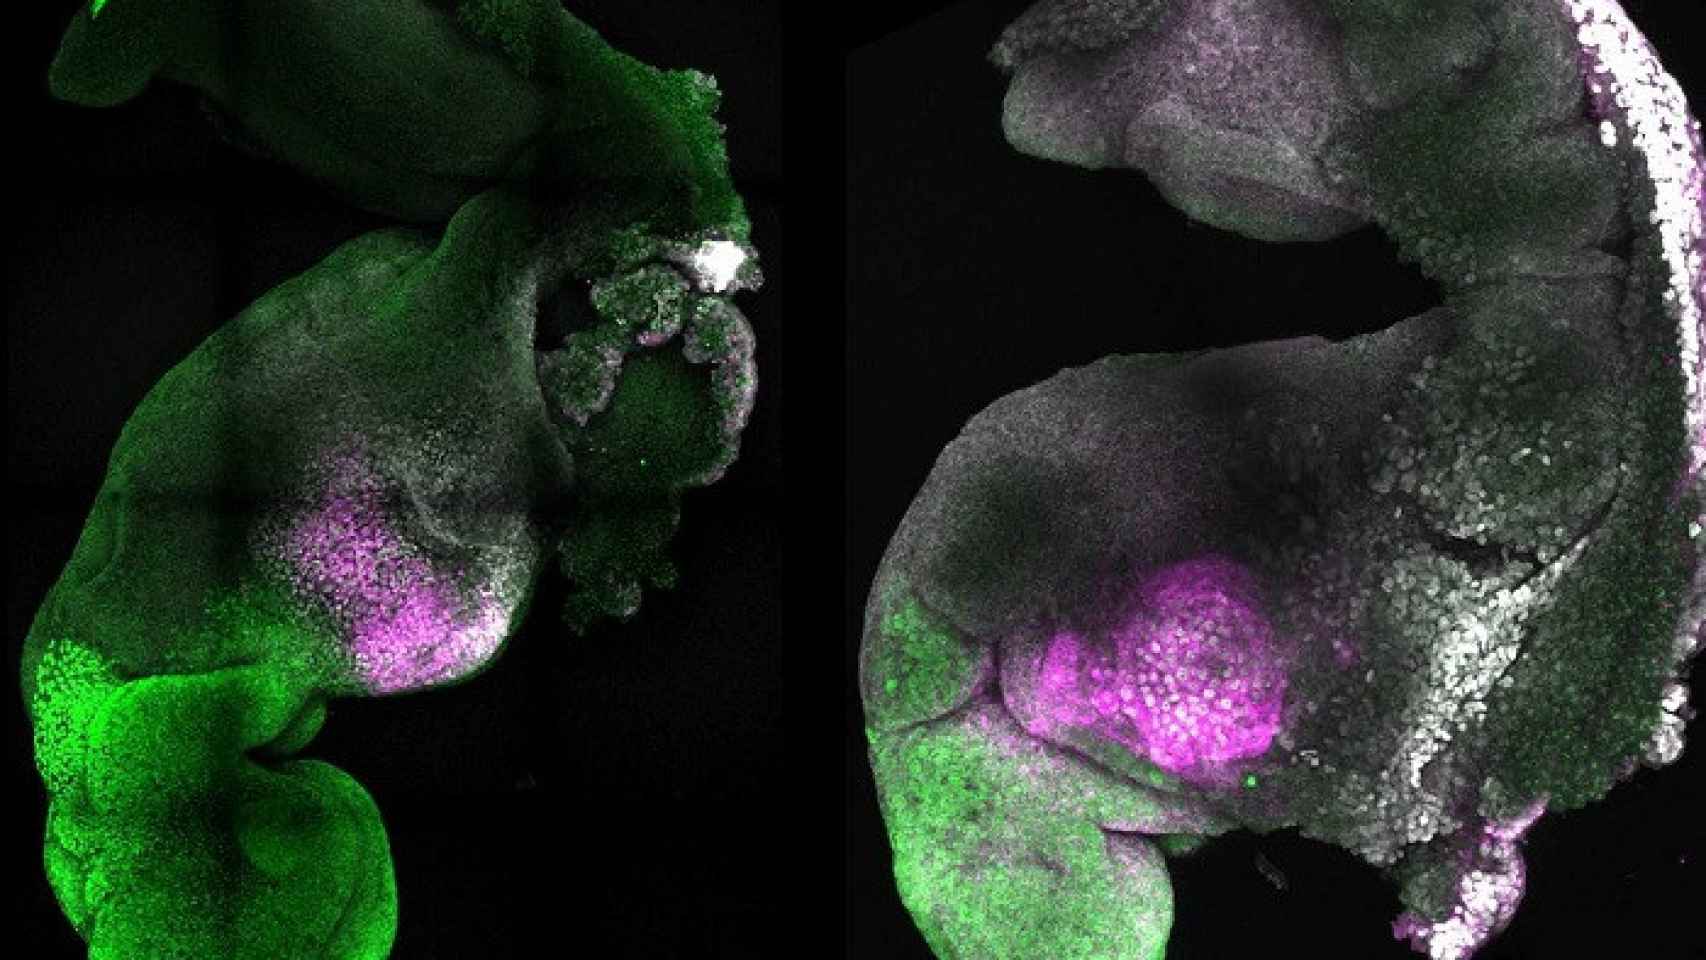 Crean-embriones-sinteticos-de-raton-con-cerebro-y-un-corazon-que-late-a-partir-de-celulas-madre